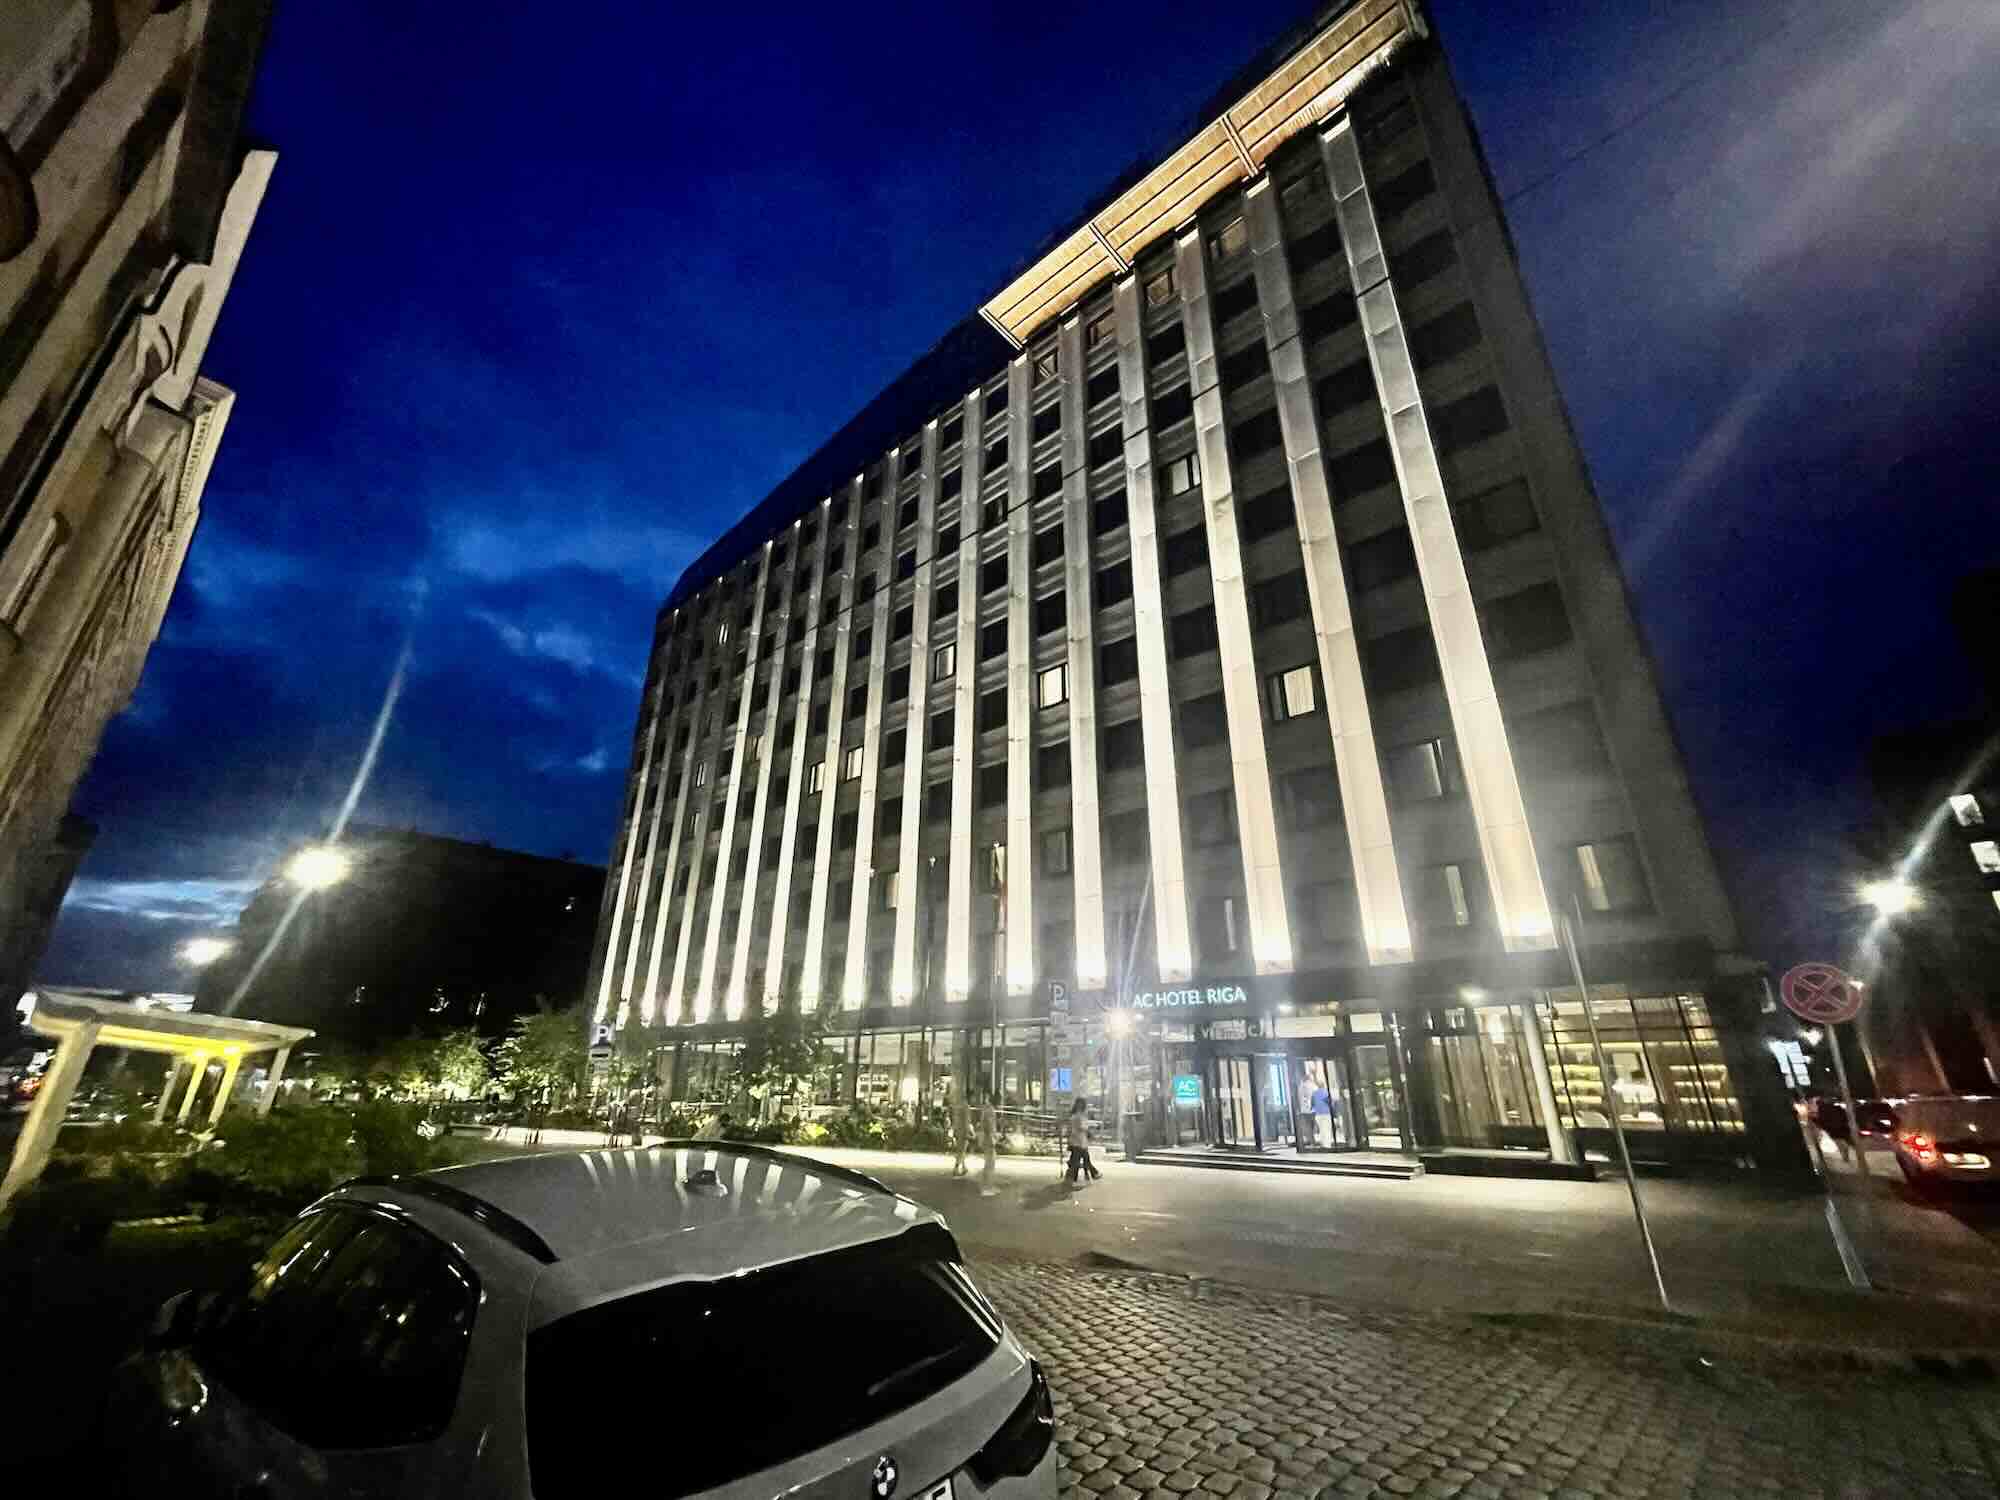 AC Hotel Riga, come si dorme nell’unica struttura Marriott della Lettonia